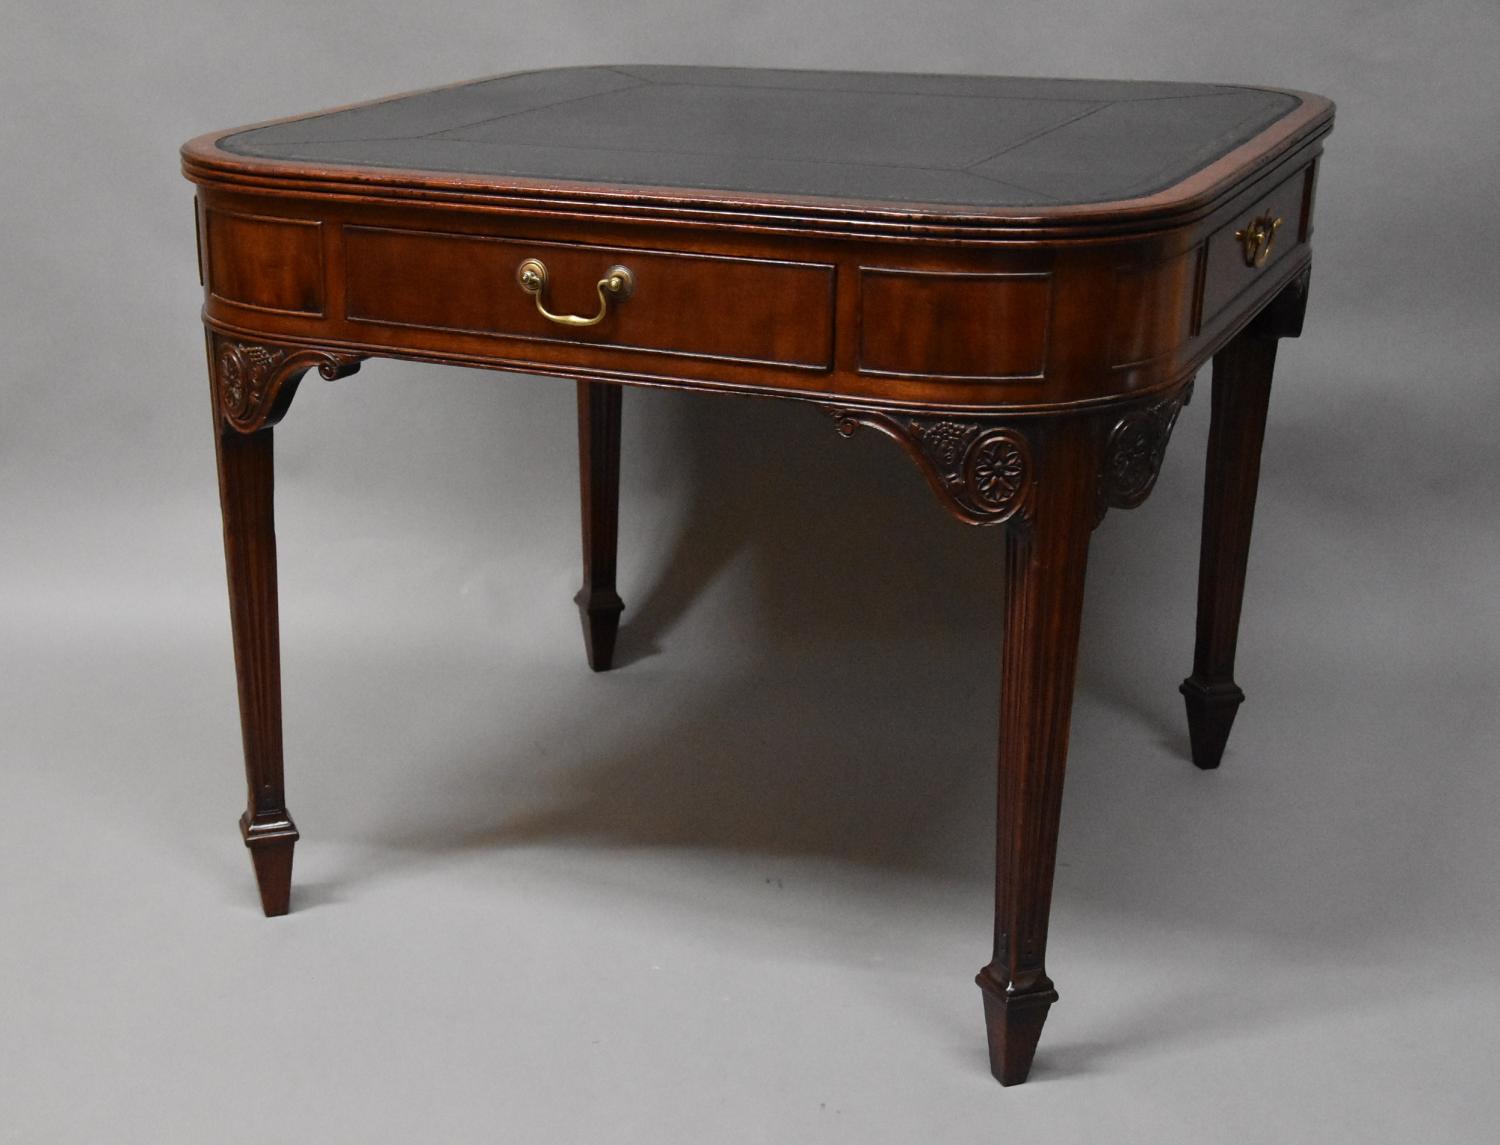 19th century mahogany writing table